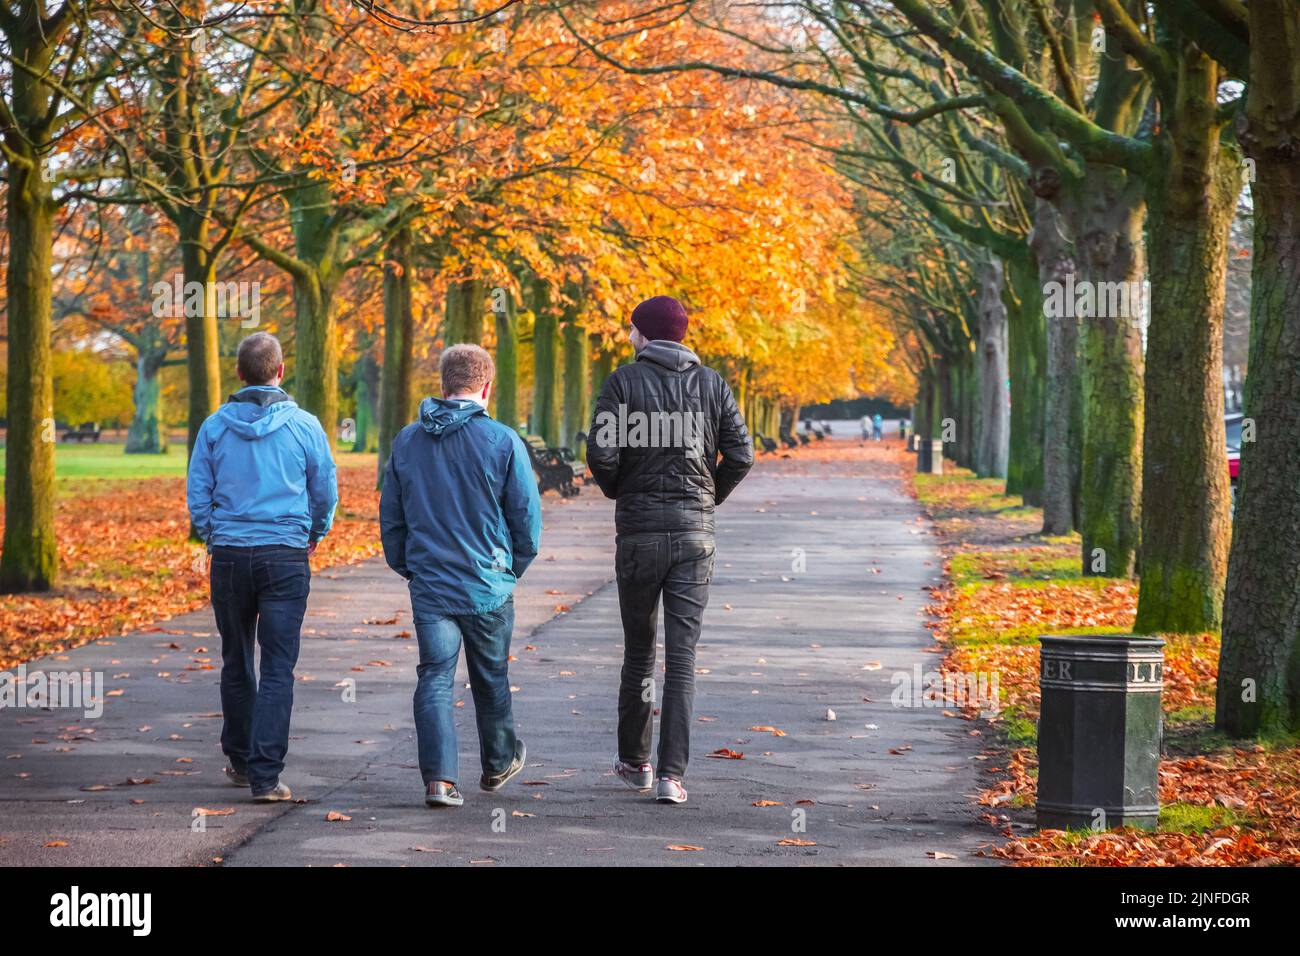 Londres, Royaume-Uni - 3 novembre 2021 - vue arrière de trois hommes qui marchent sur un sentier à arbres dans le parc de Greenwich pendant la saison d'automne Banque D'Images